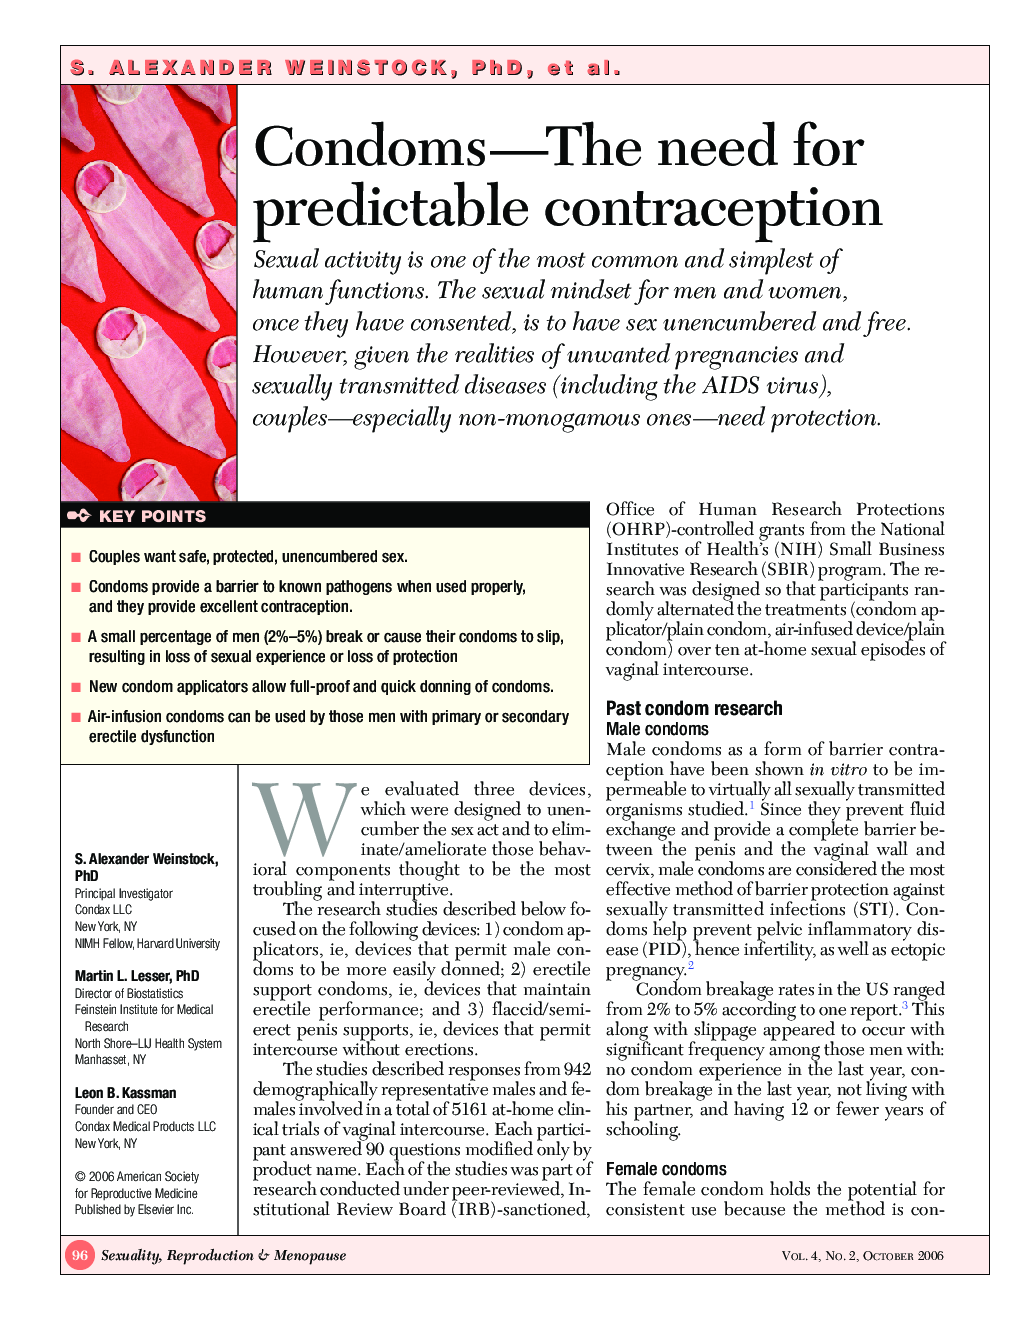 Condom—The need for predictable contraception